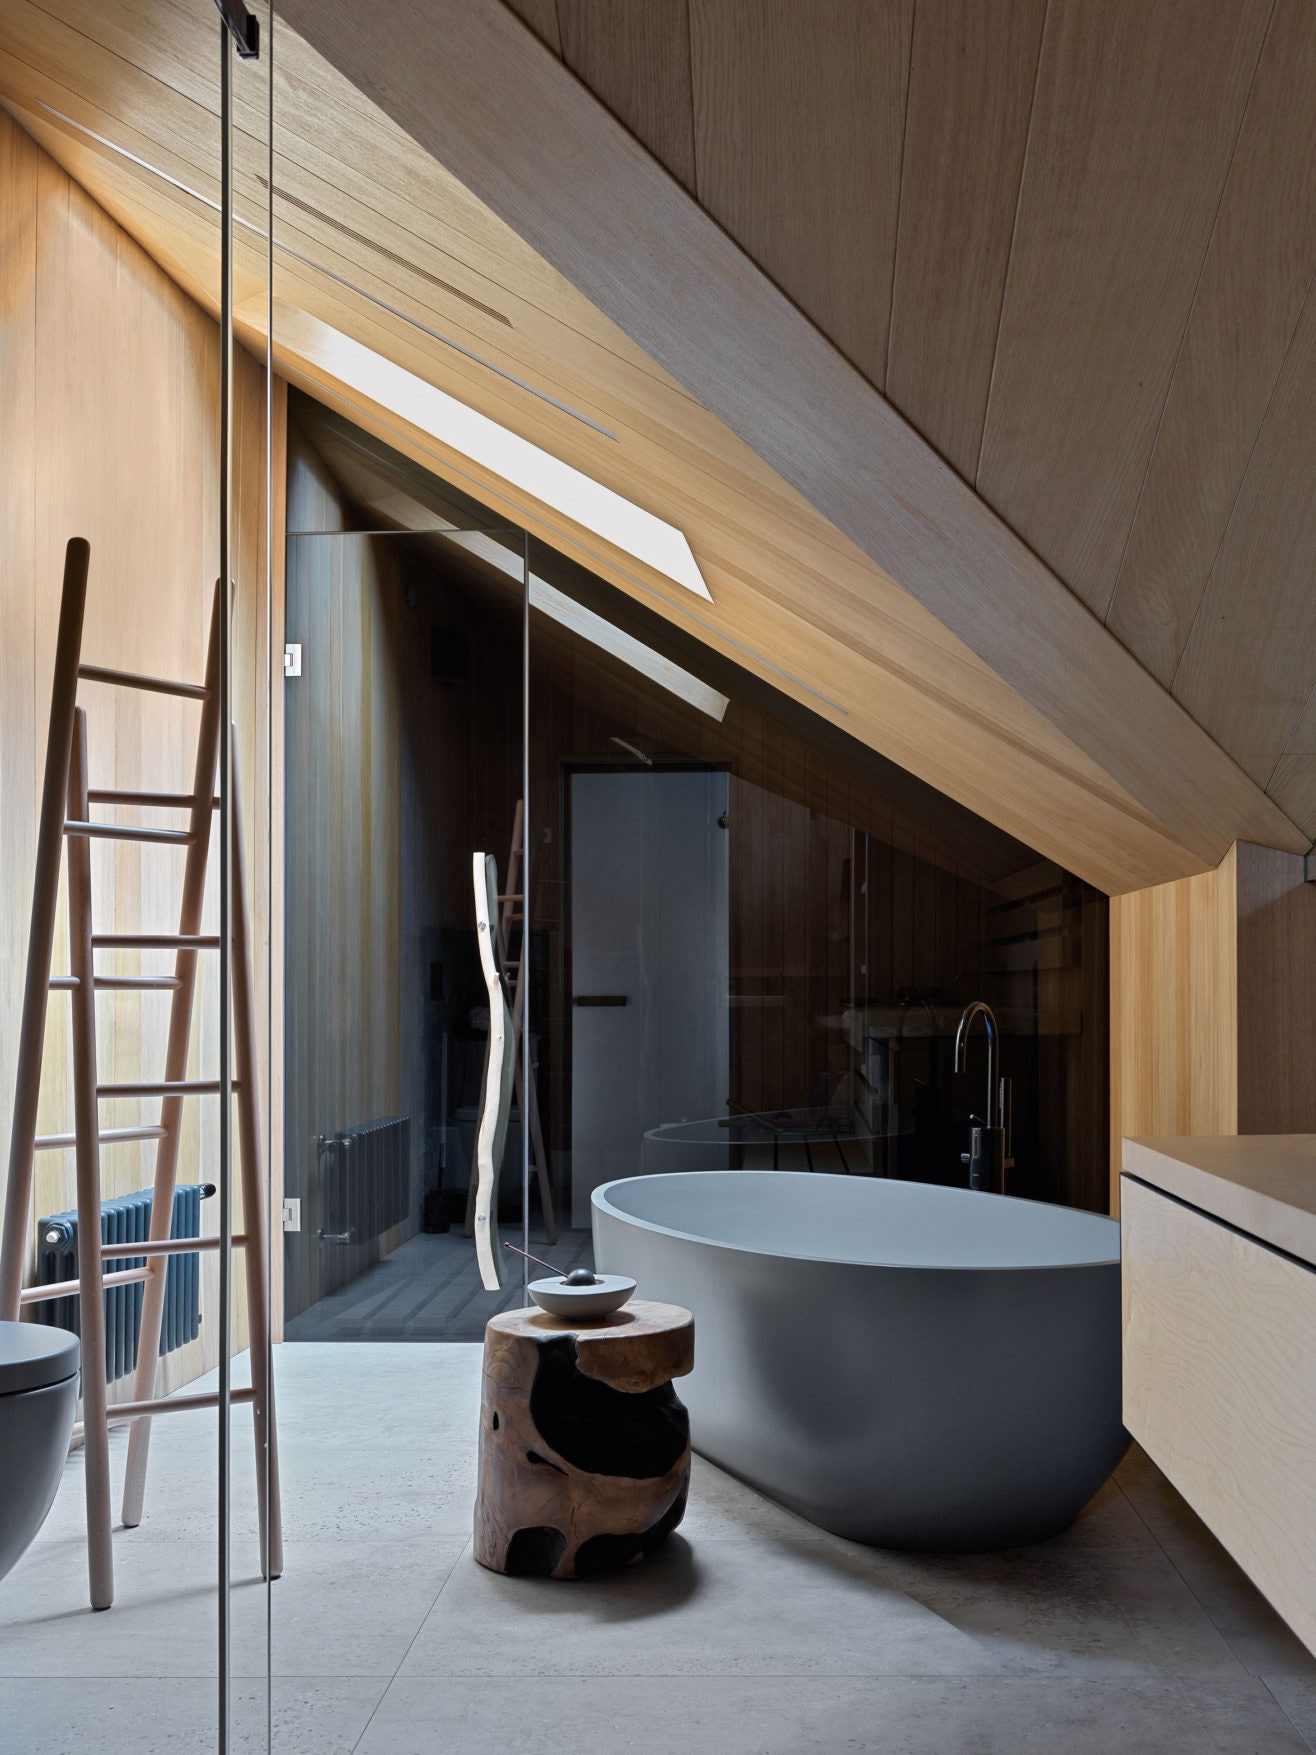 Квартира по проекту “МКИнтерио” в СанктПетербурге. Главная ванная. Подстолье для раковины и дверная ручка сделаны на...